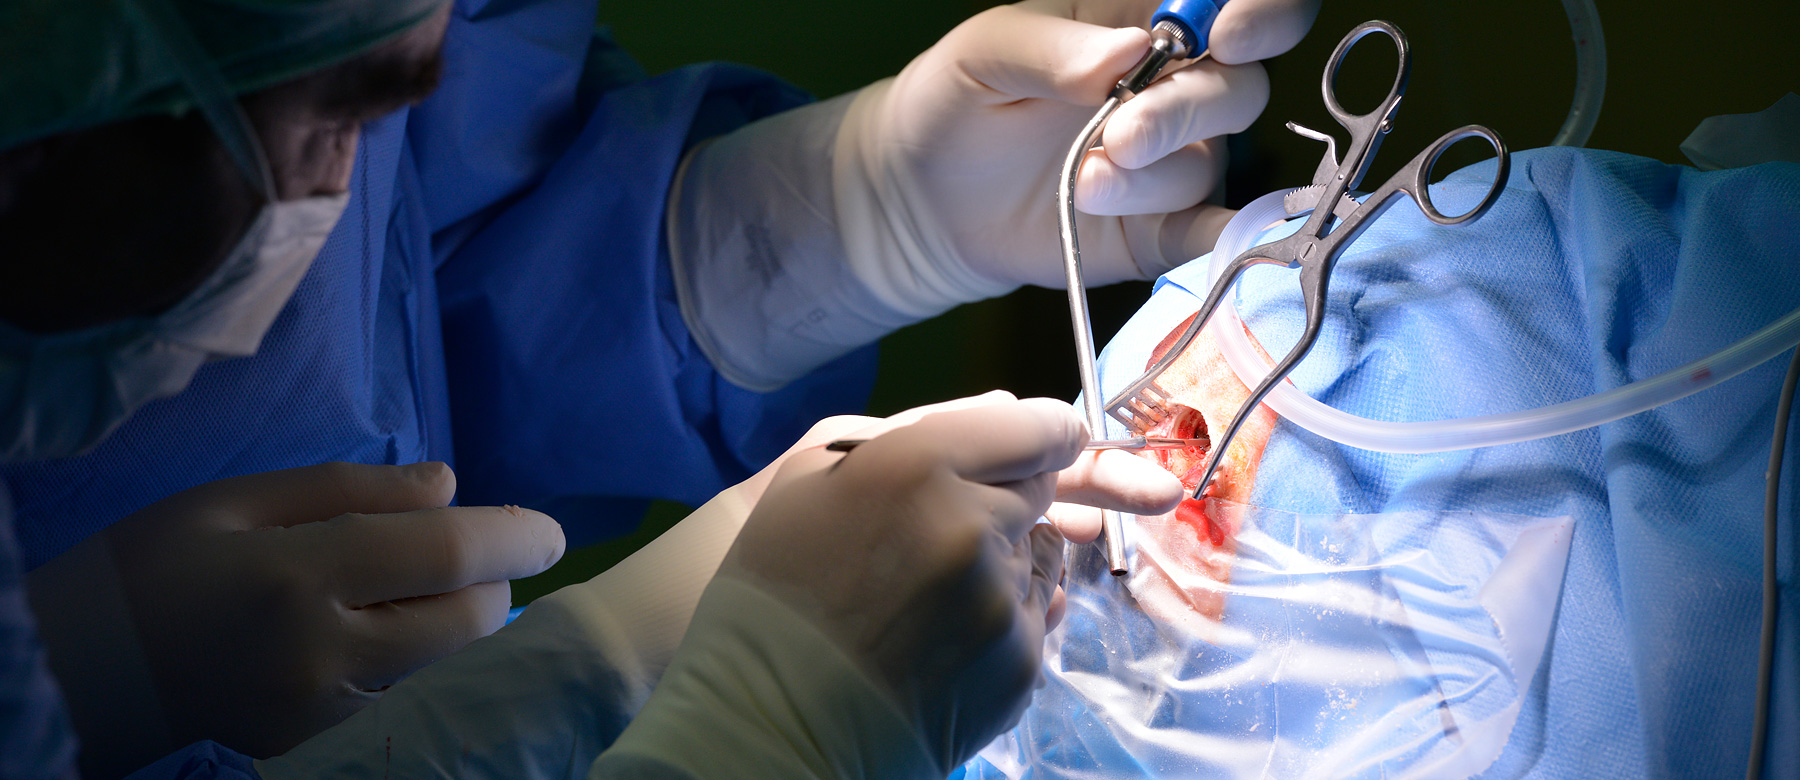 Ärzte der Abteilung für Neurochirurgie öffnen während der Operation den Schädel..